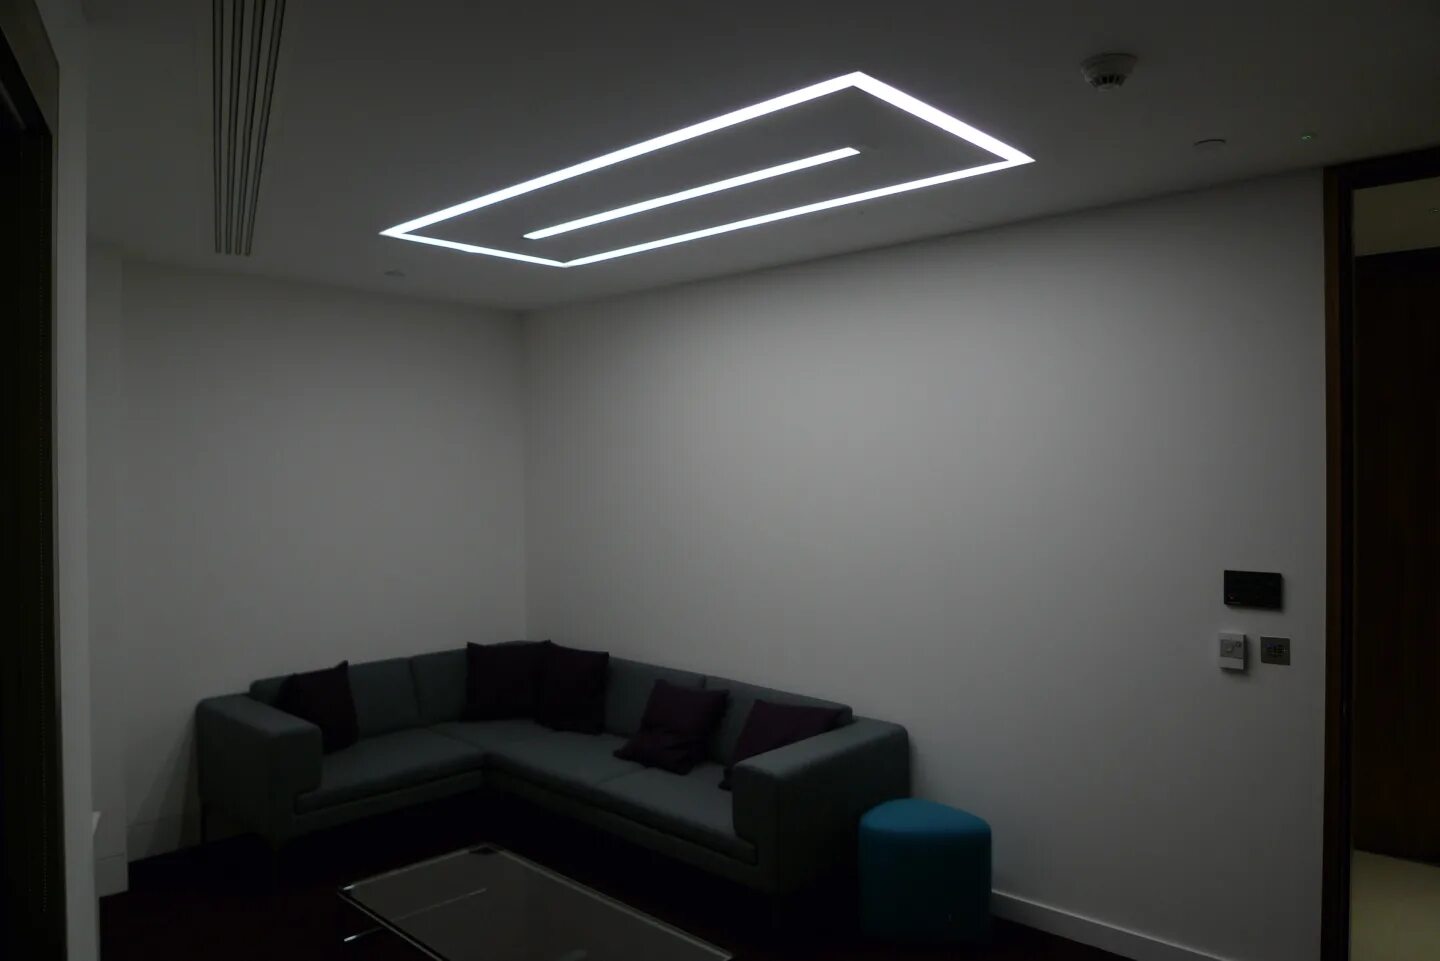 Потолок с подсветкой. Линейный светильник. Световая подсветка потолка. Подсветка потолка полосами. Свет от световых линий